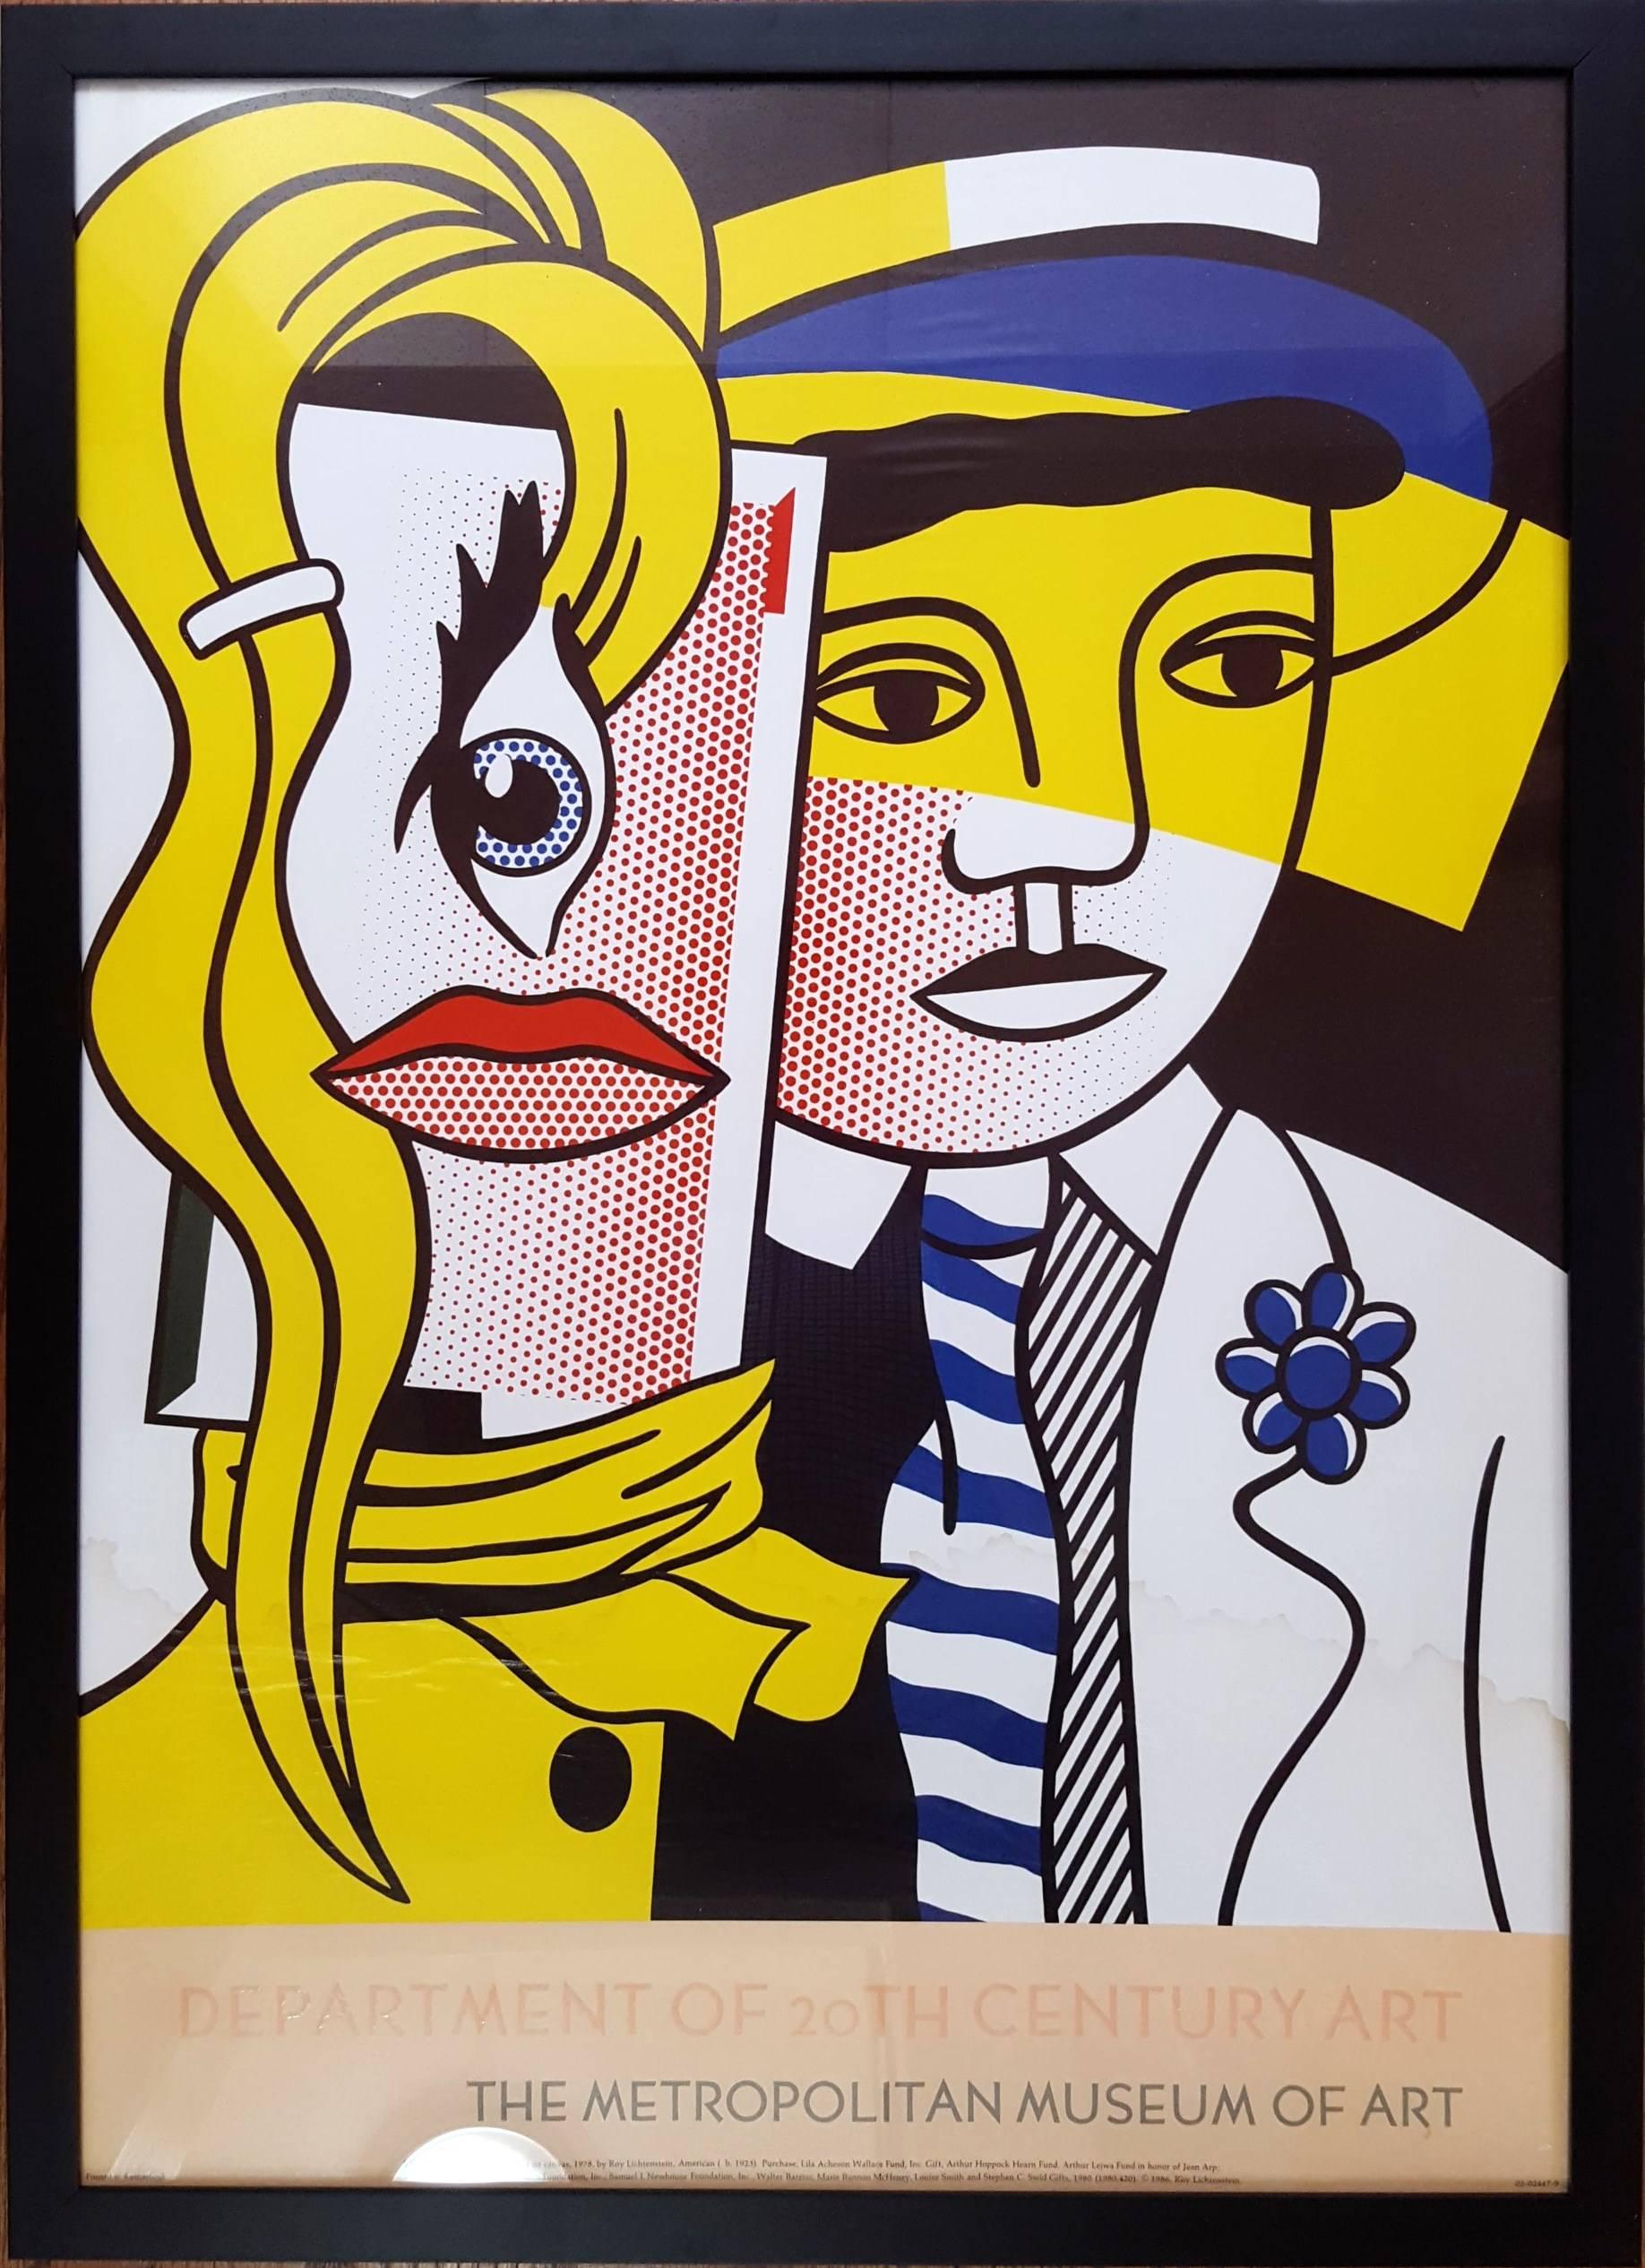 Roy Lichtenstein: The Metropolitan Museum of Art - Print by (after) Roy Lichtenstein